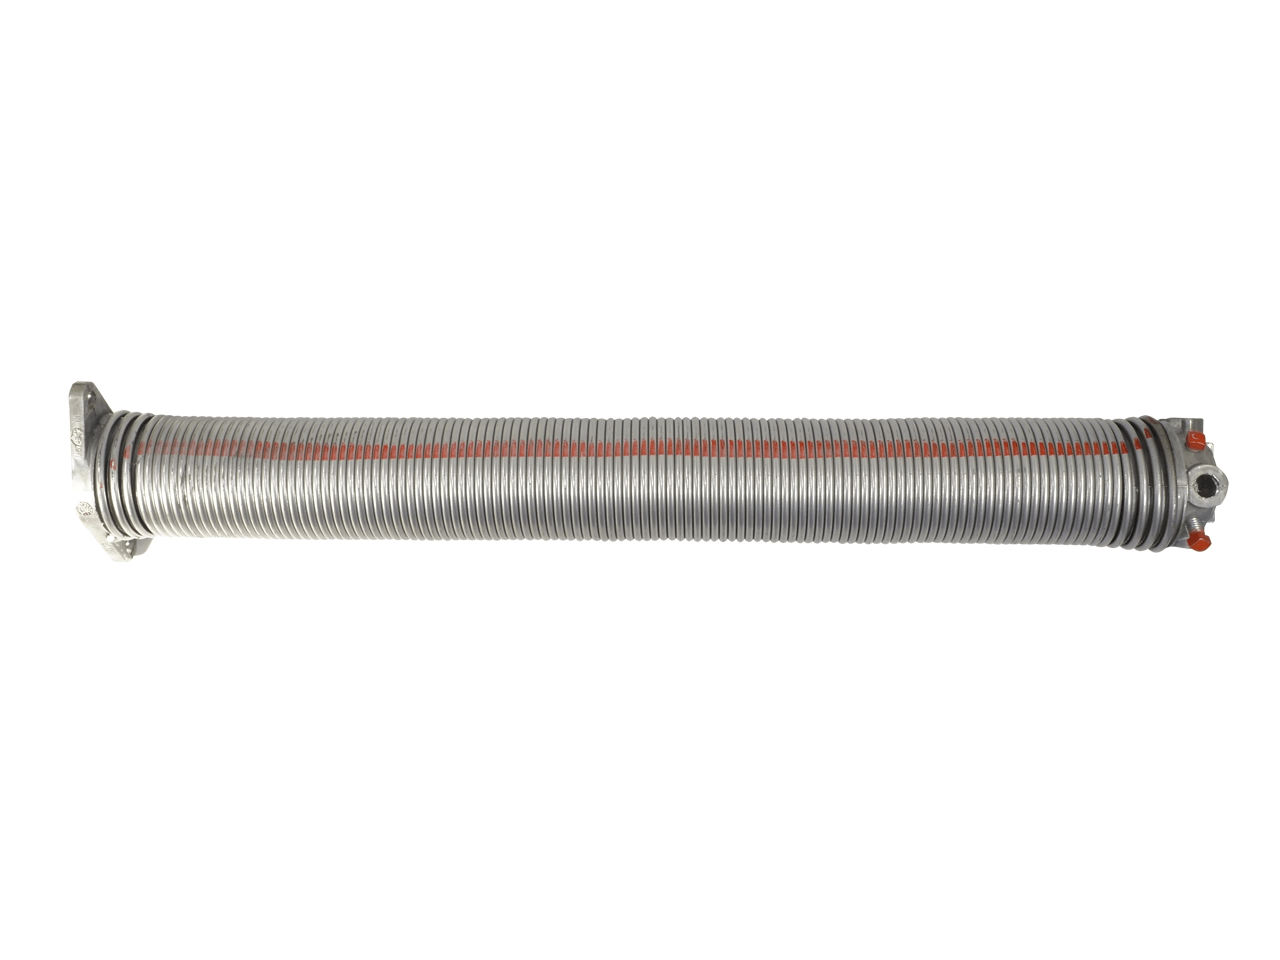 Torfeder, Innendurchmesser 152 mm, Drahtstärke 8 mm, Windung Links, mit Köpfen für Welle 25,4mm